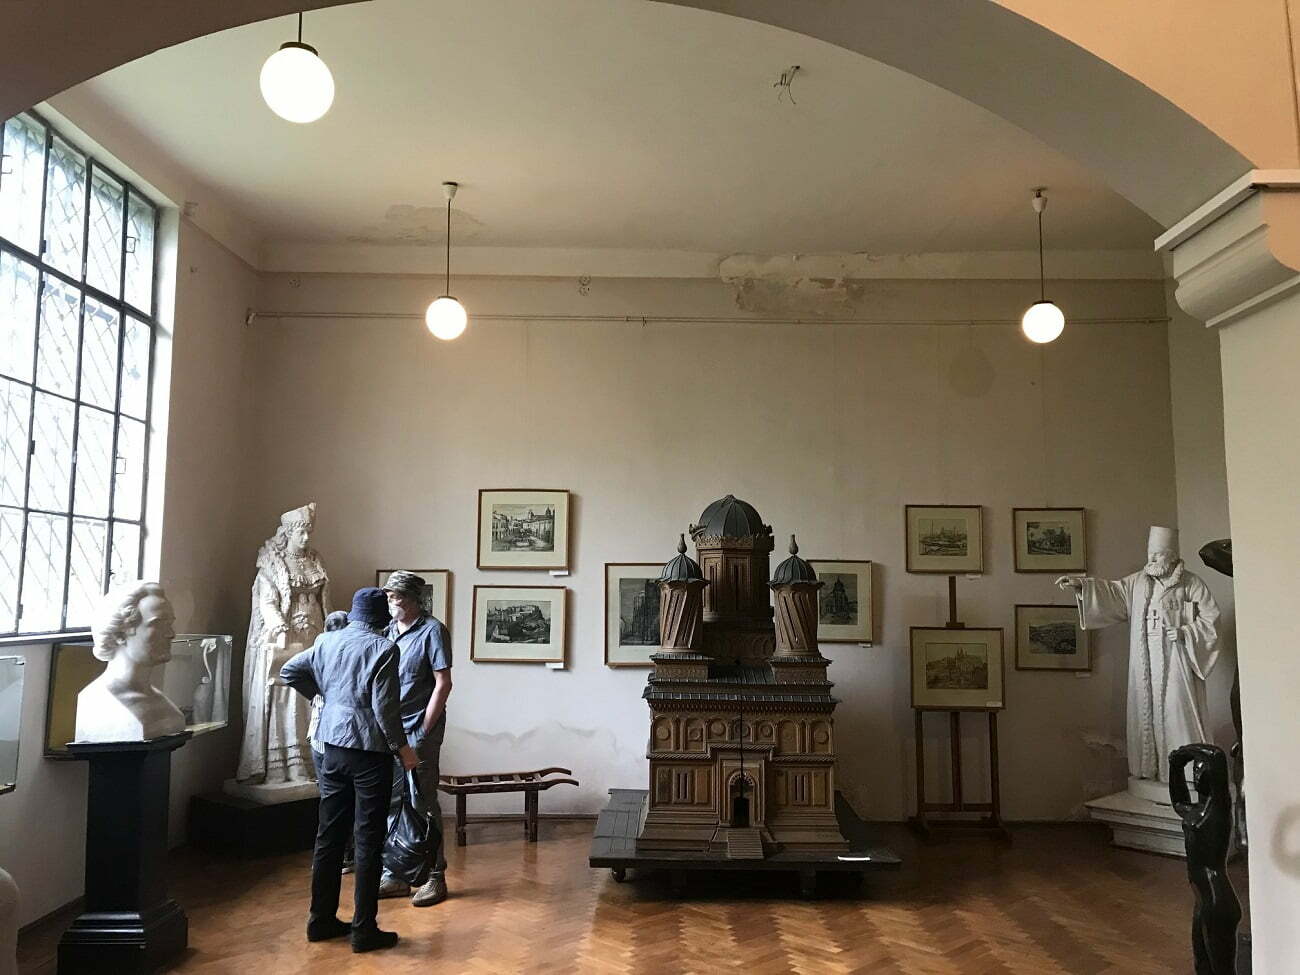 Primăria Municipiului București negociază cu familia artiștilor Storck pentru a intra în posesia imobilului ce găzduiește muzeul